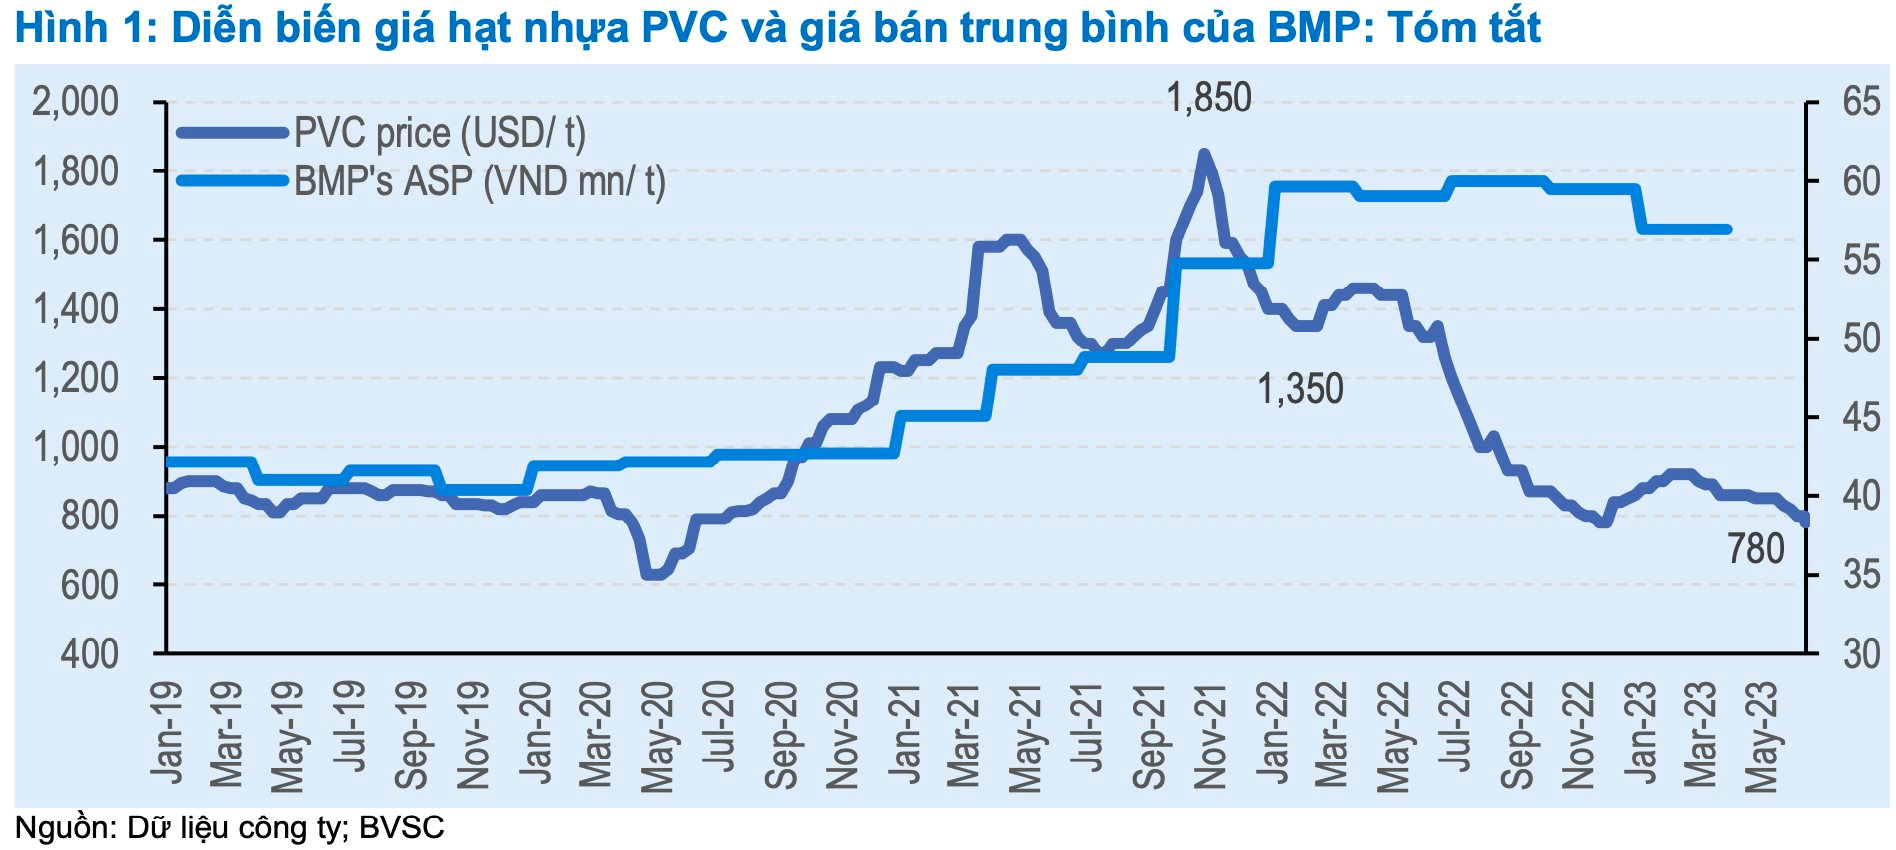 Giá hạt nhựa PVC duy trì ở mức thấp, Nhựa Bình Minh (BMP) sẽ phá sâu kỷ lục lợi nhuận? - Ảnh 1.